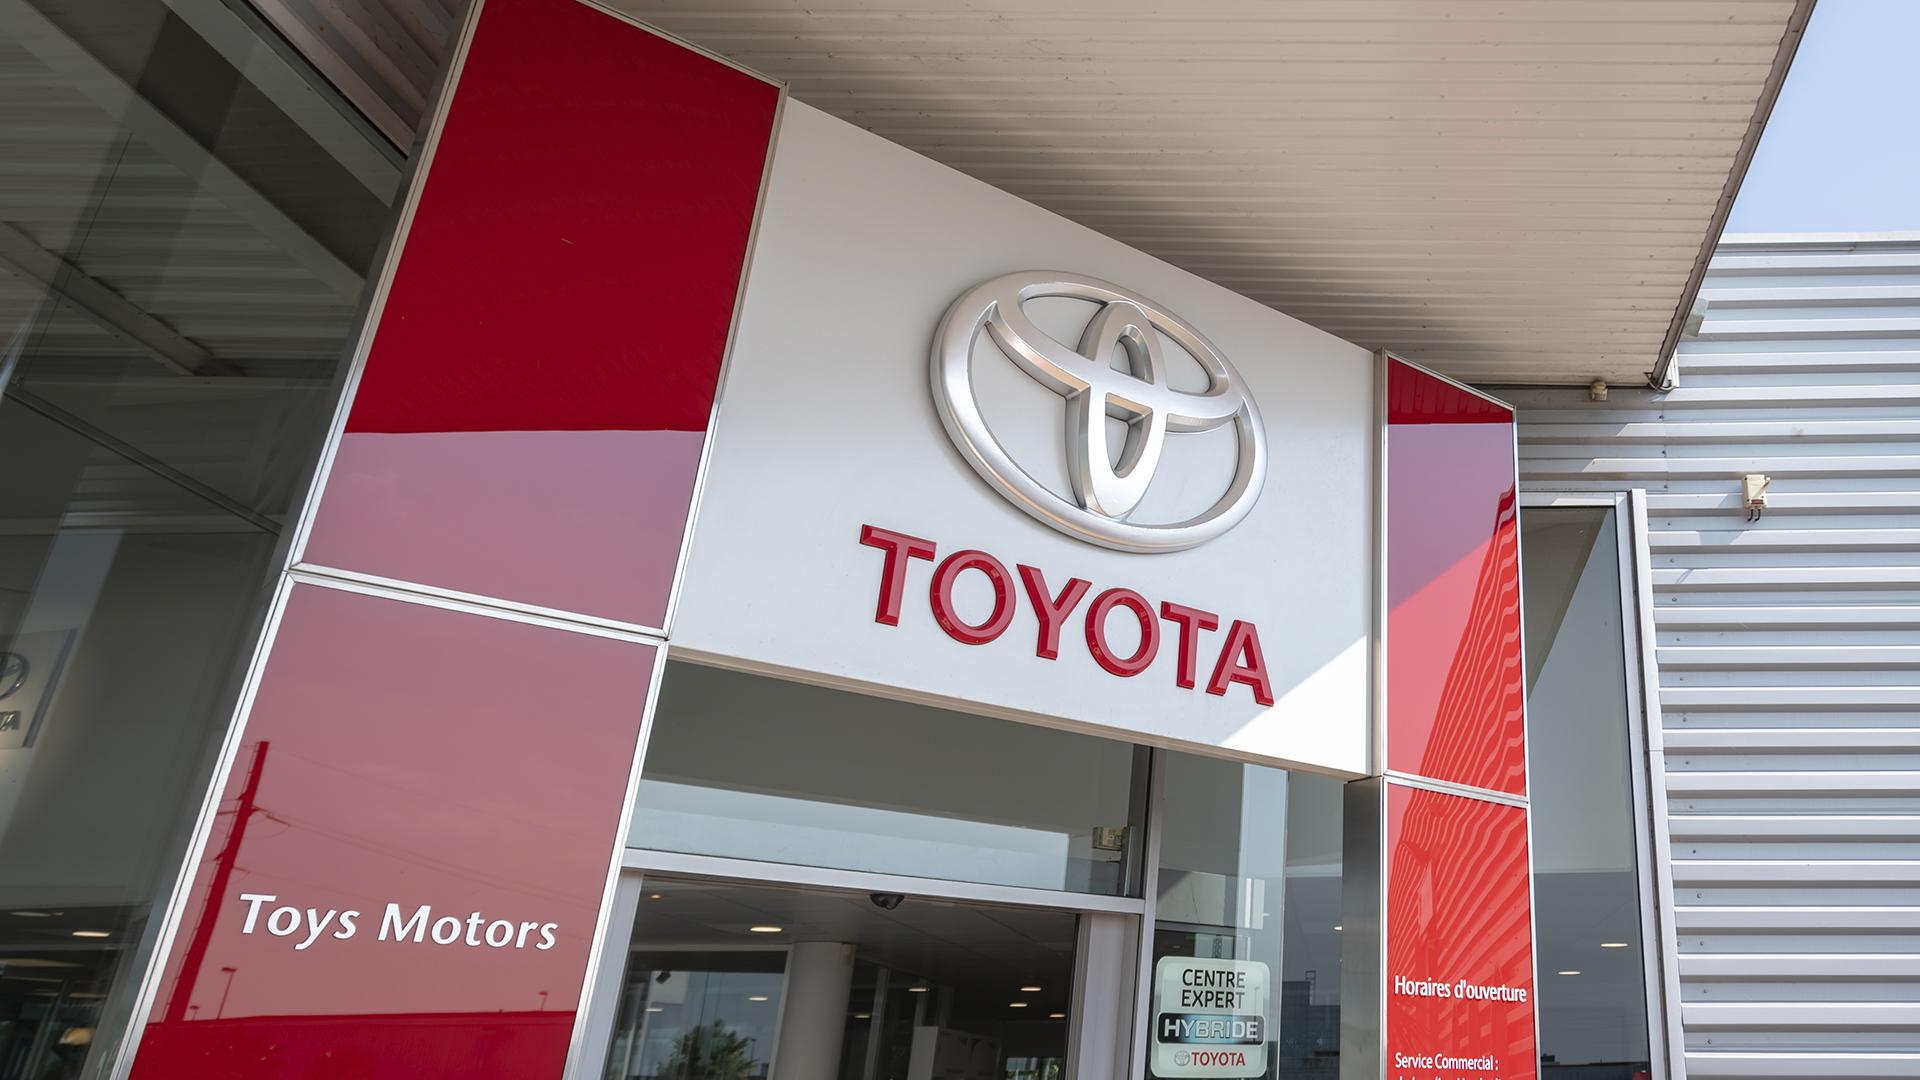 Toyota dealership entrance signage manufactured by Visotec